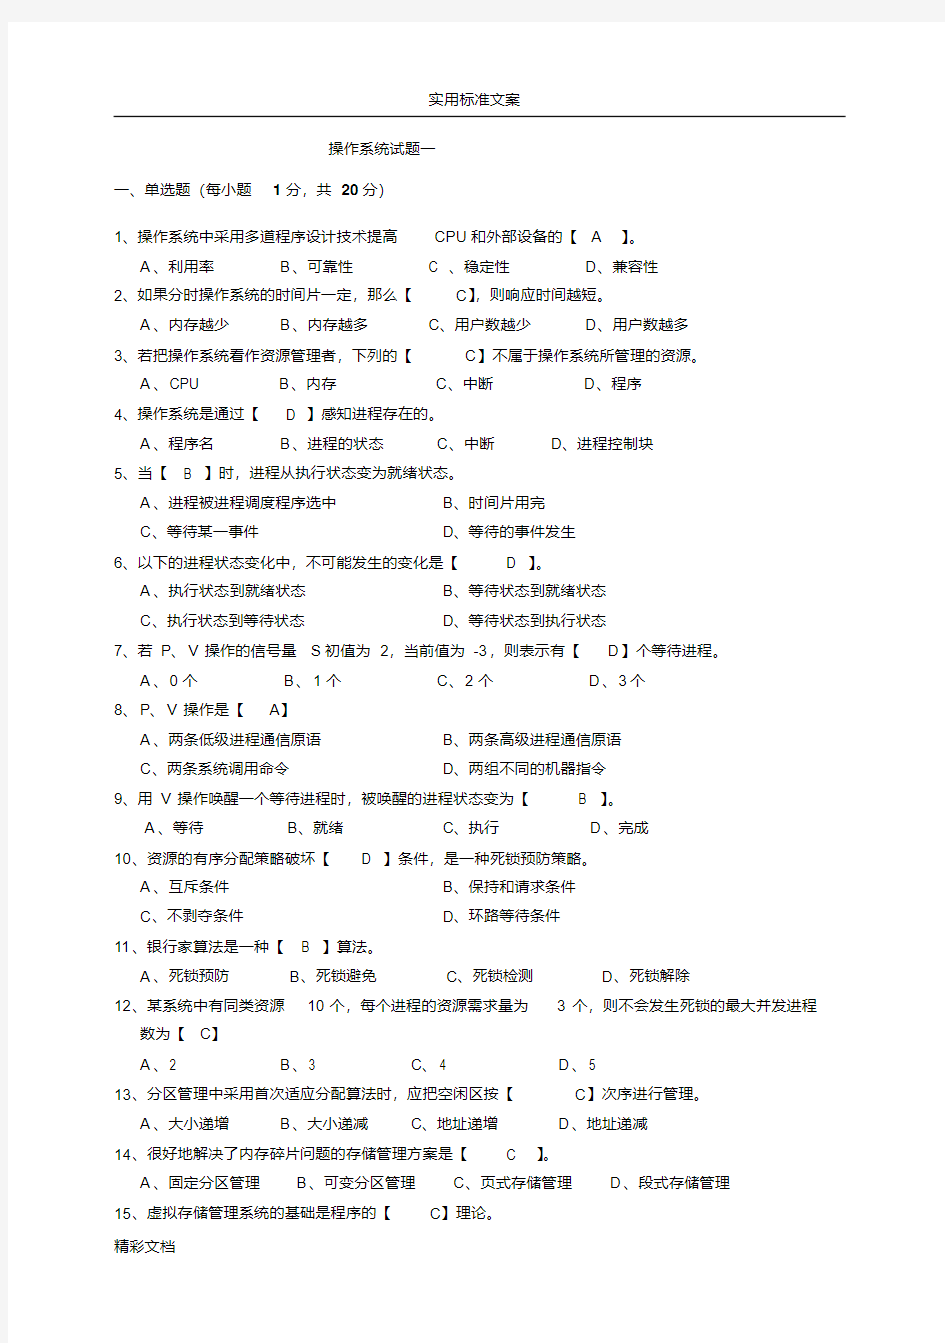 操作系统试题及详解.pdf